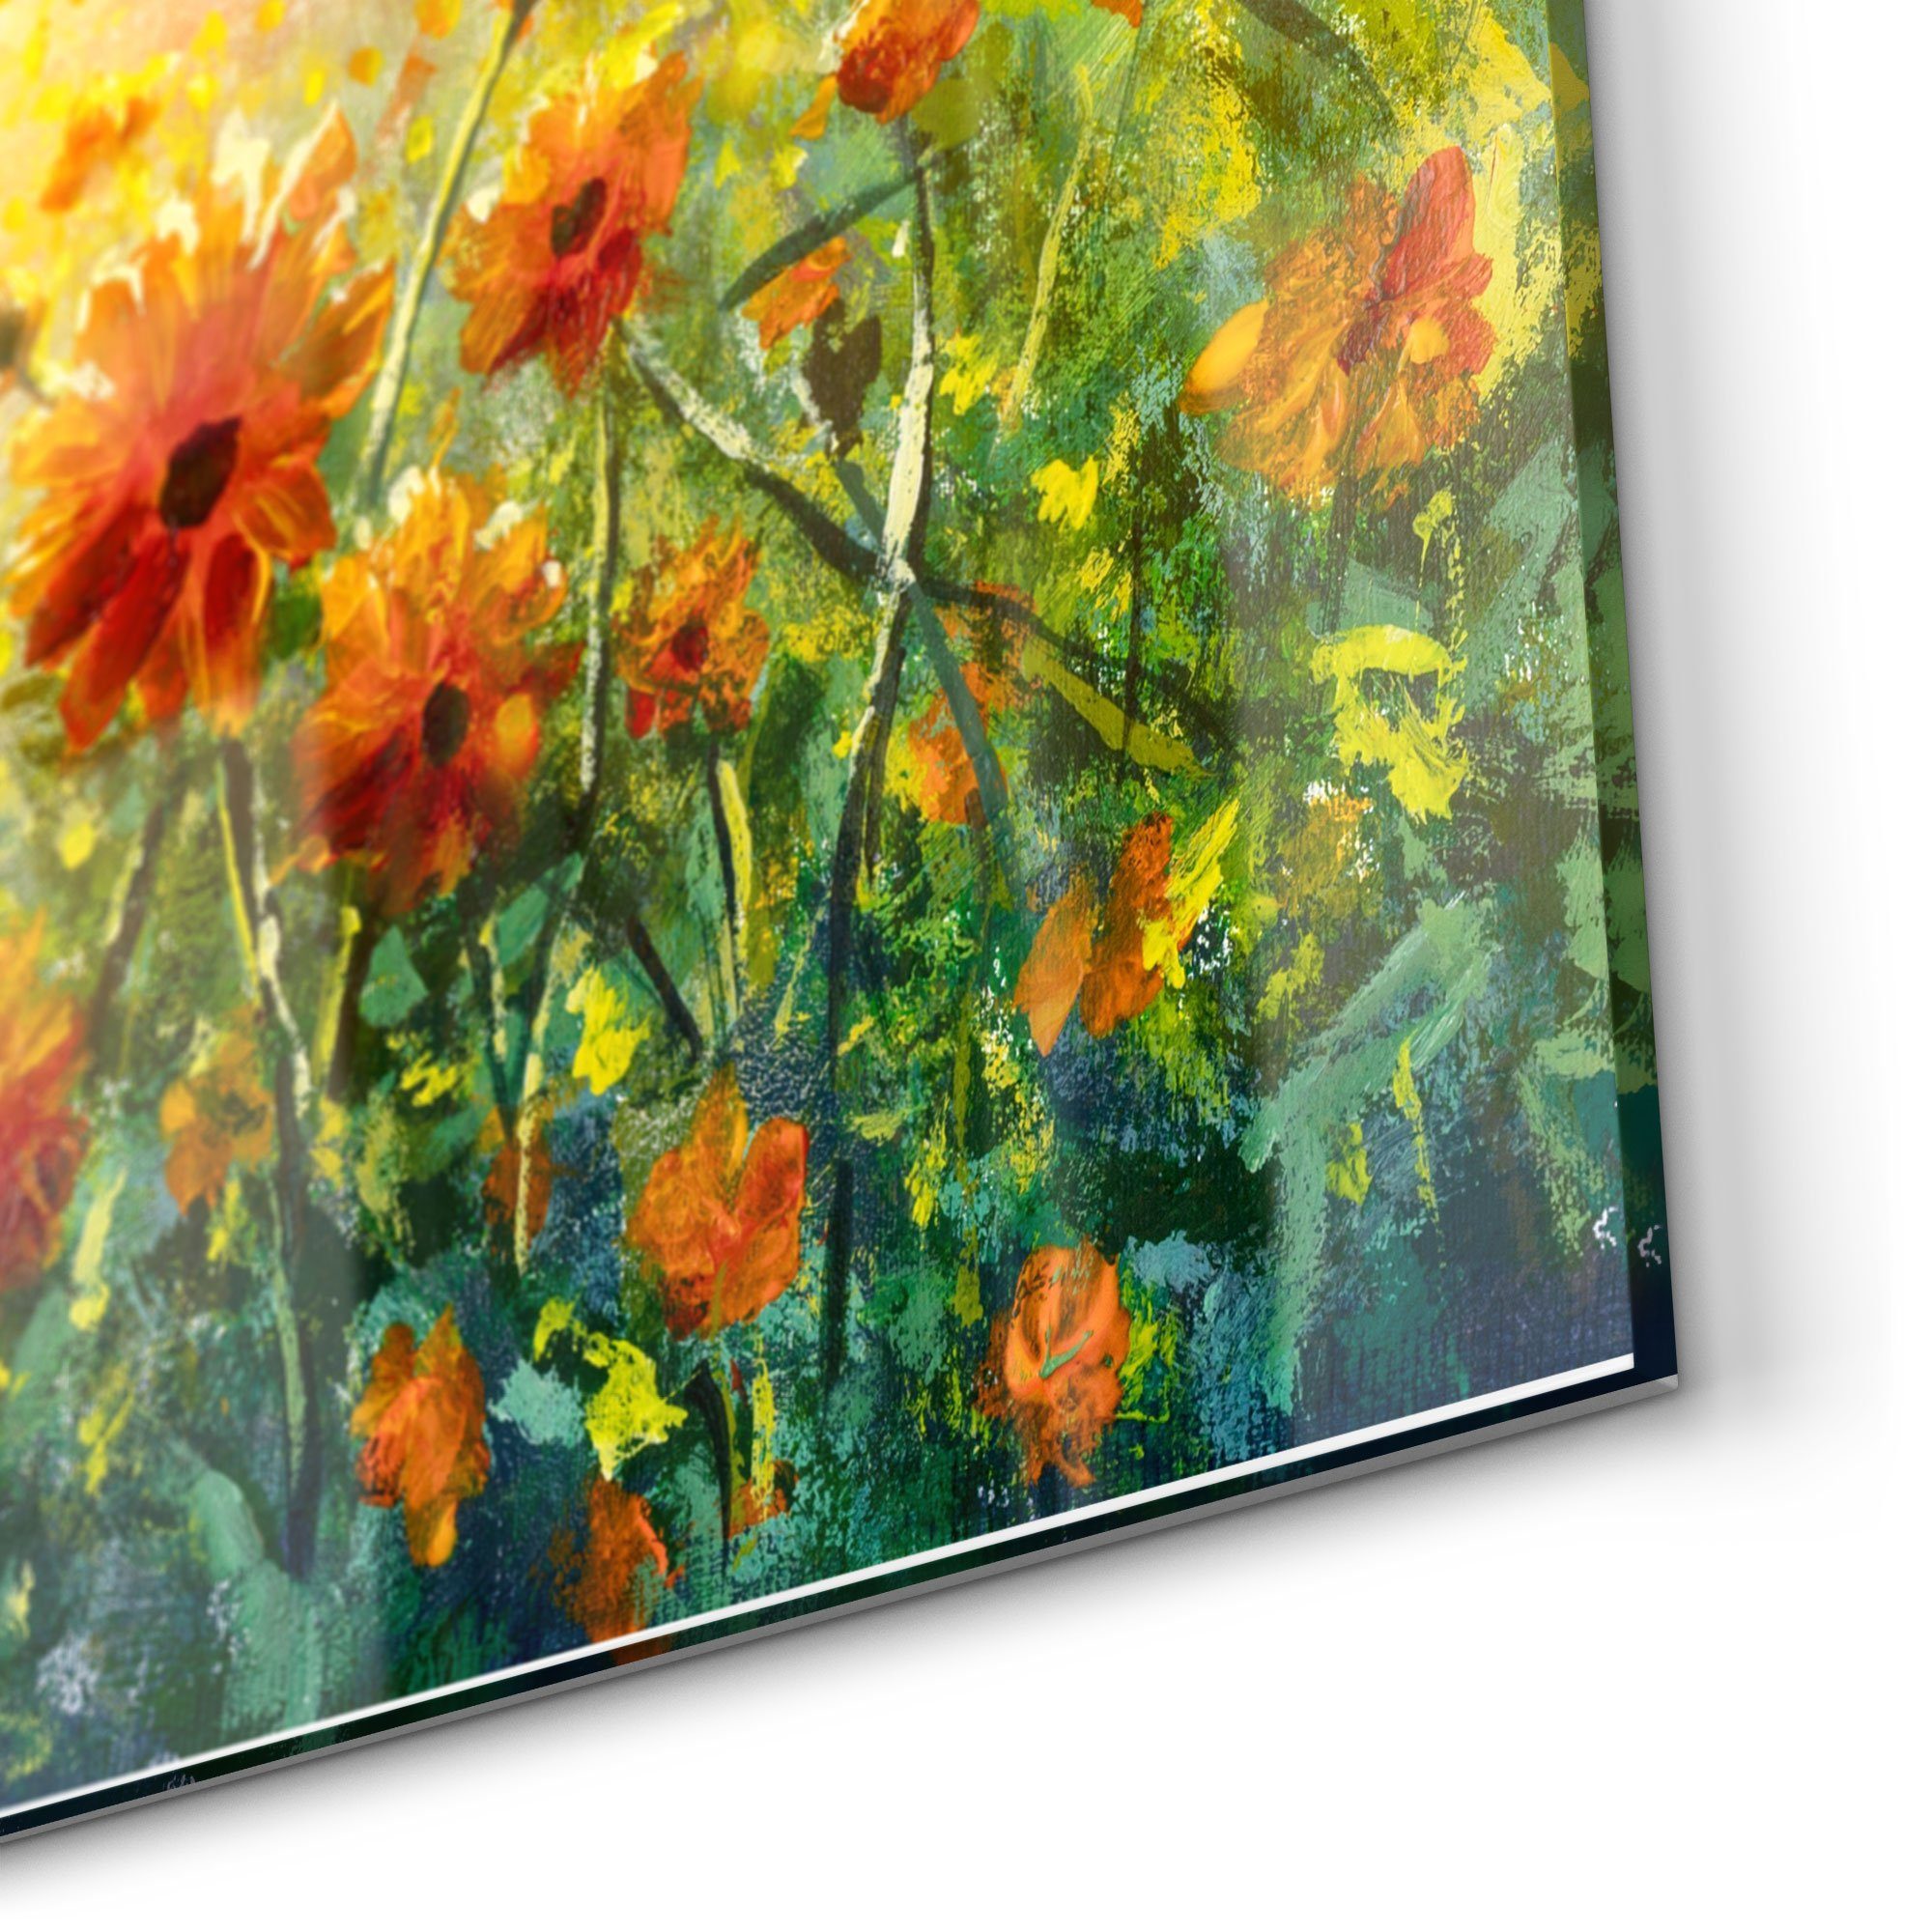 Badrückwand Glas DEQORI im Herdblende Monet-Stil', Küchenrückwand Spritzschutz 'Blumenwiese